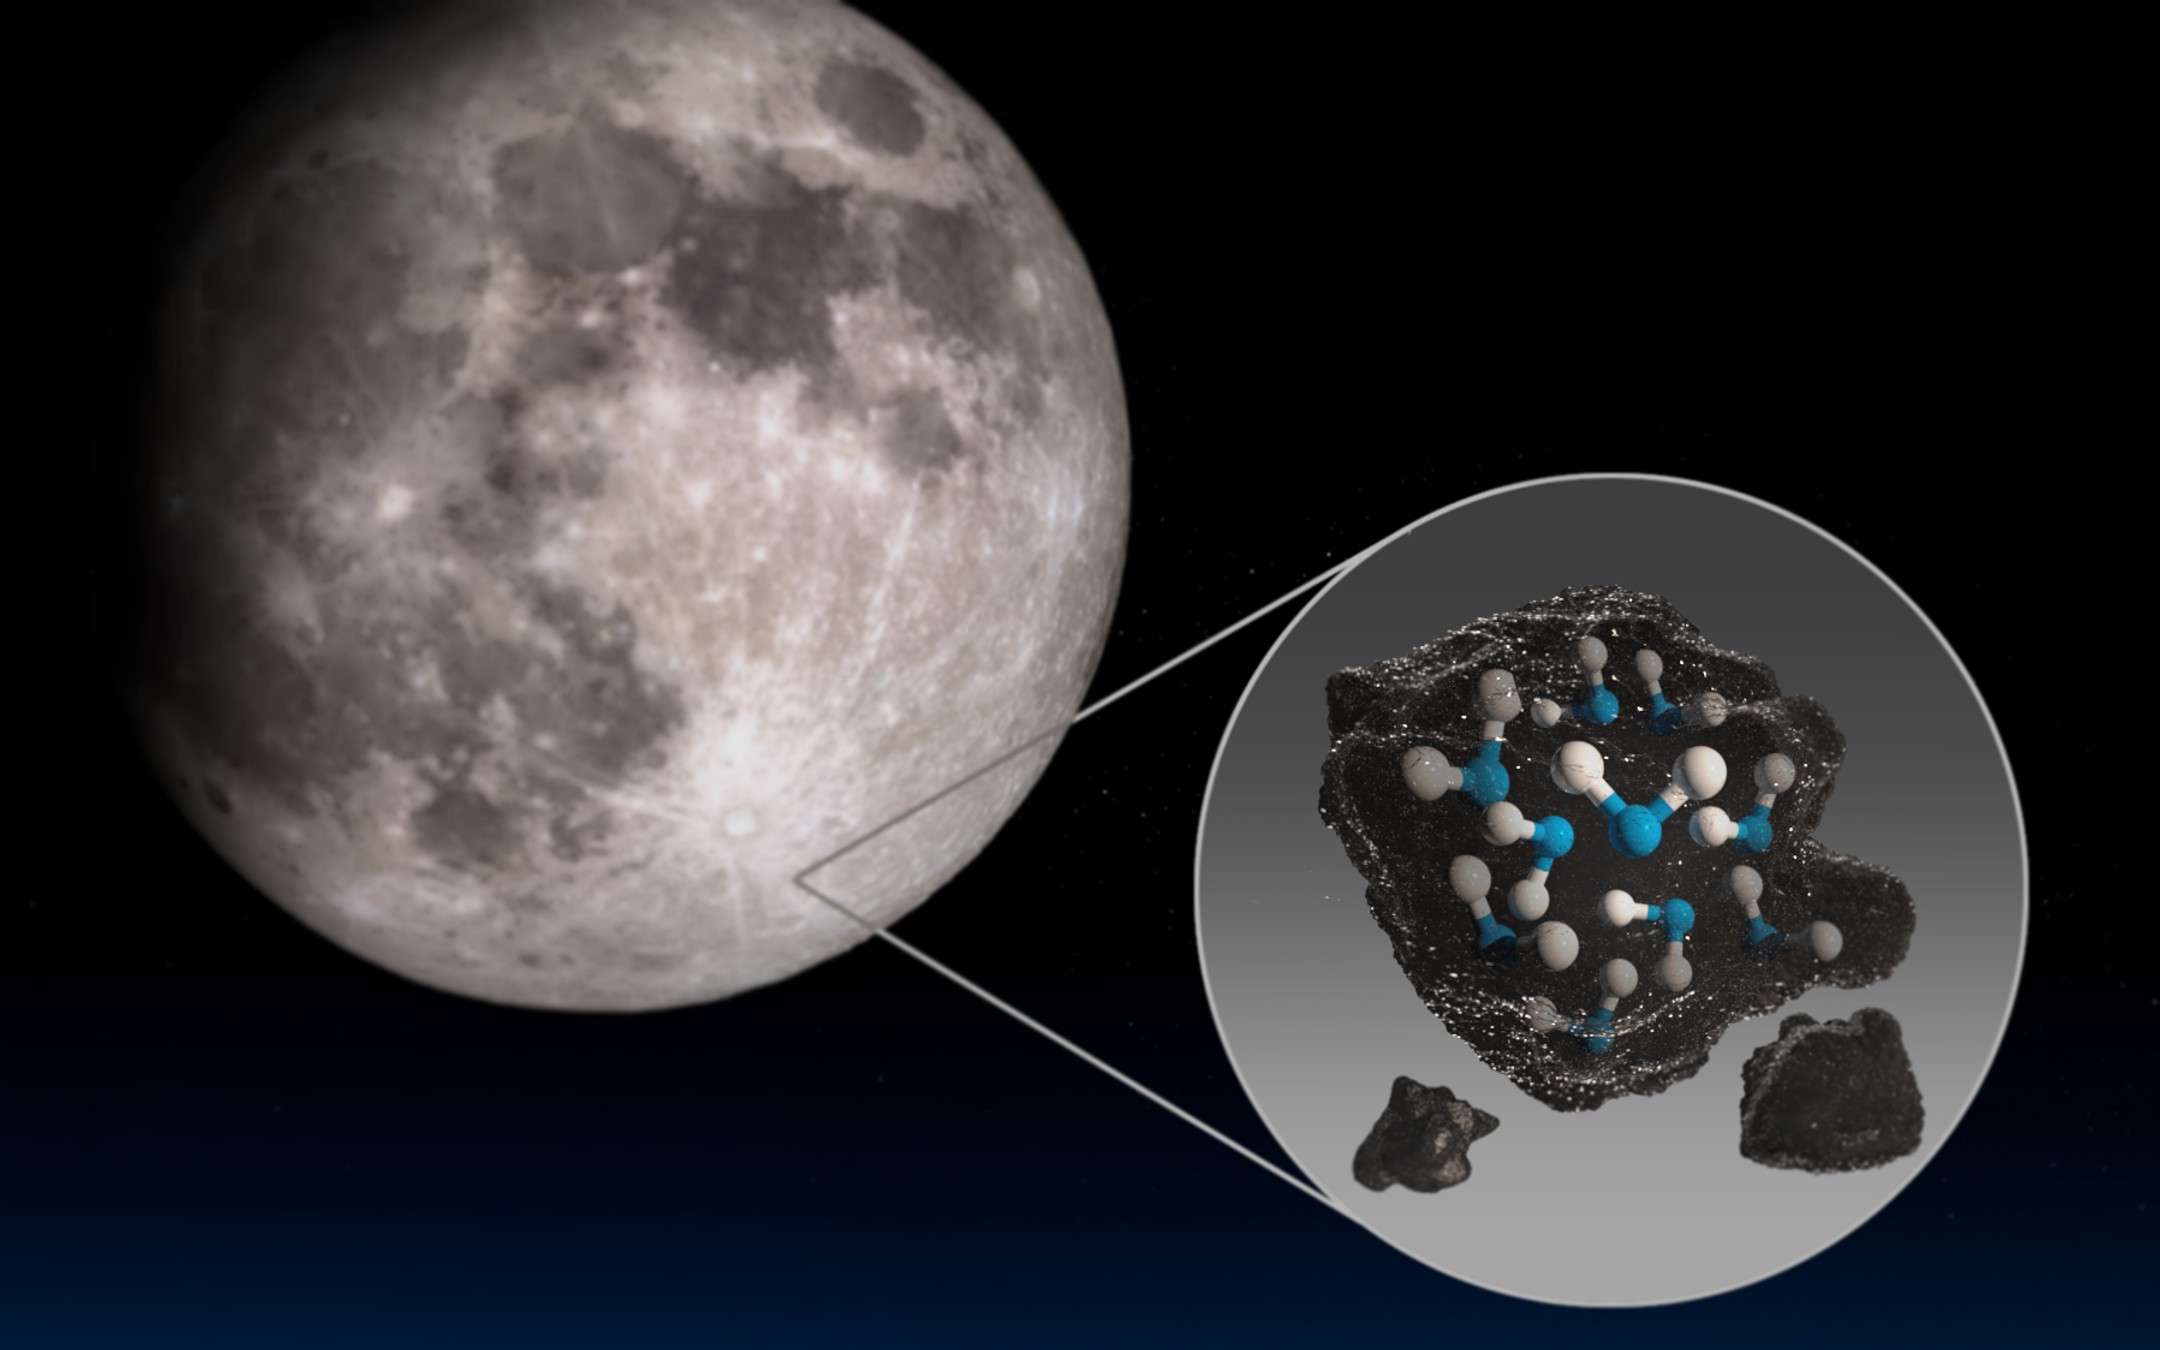 C'è acqua sulla Luna: ecco cosa ha rivelato la NASA